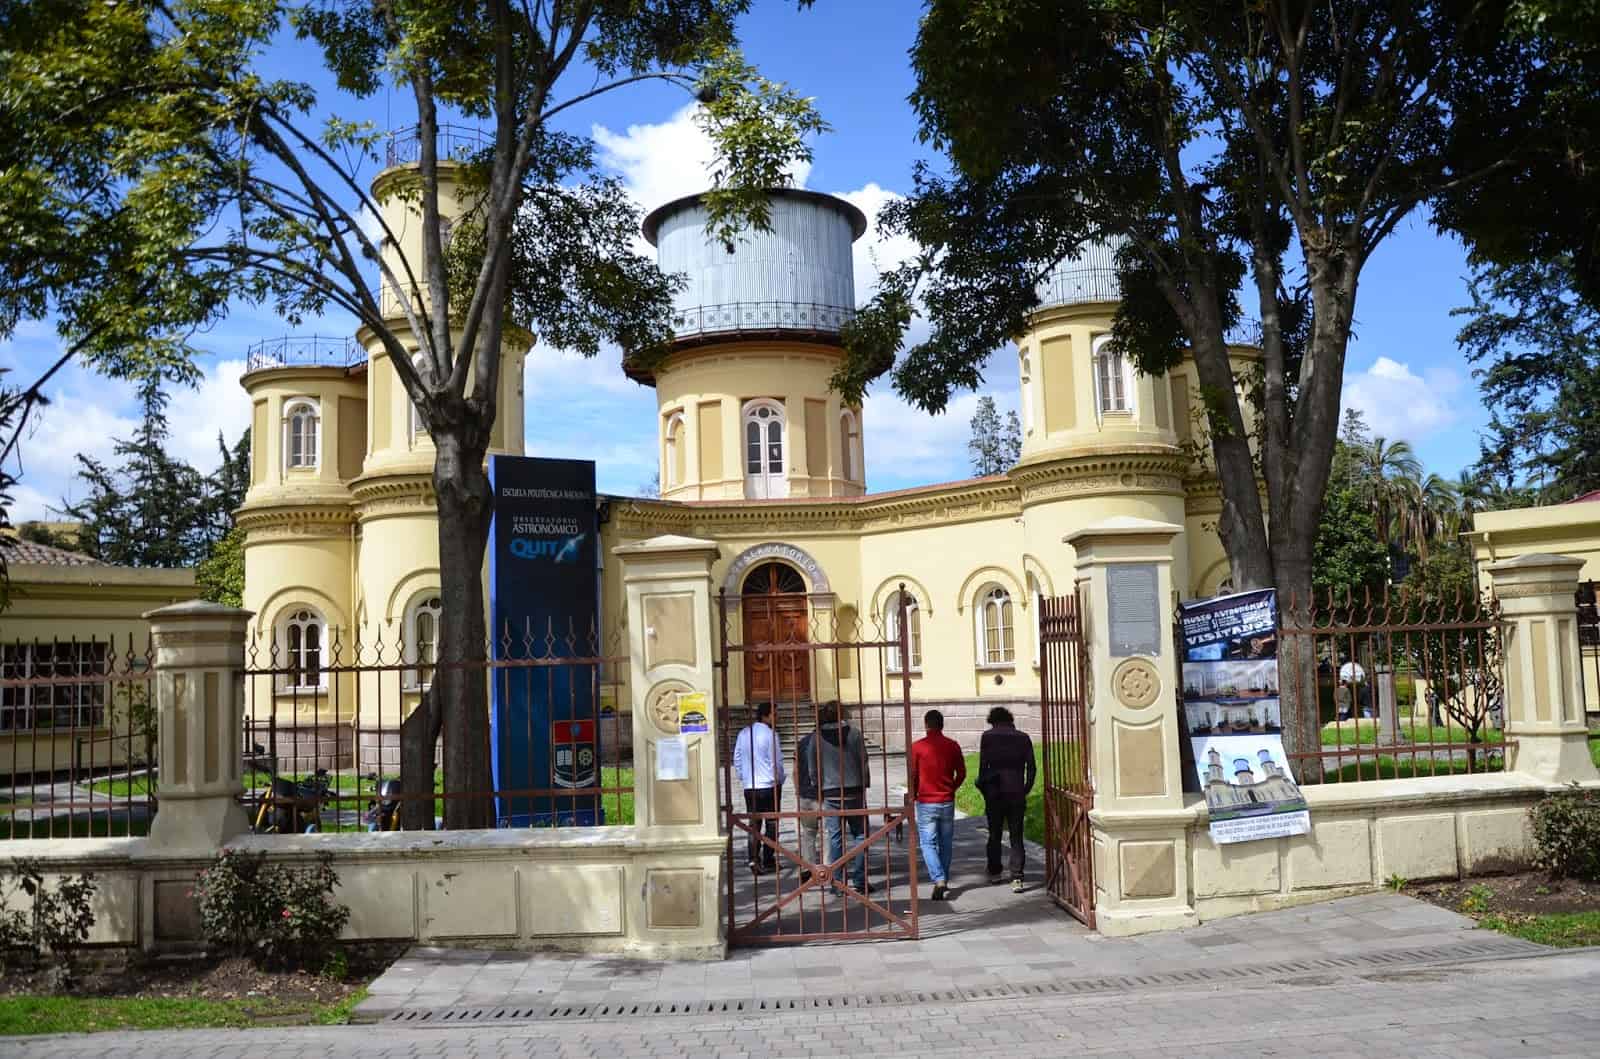 Quito Observatory in Quito, Ecuador